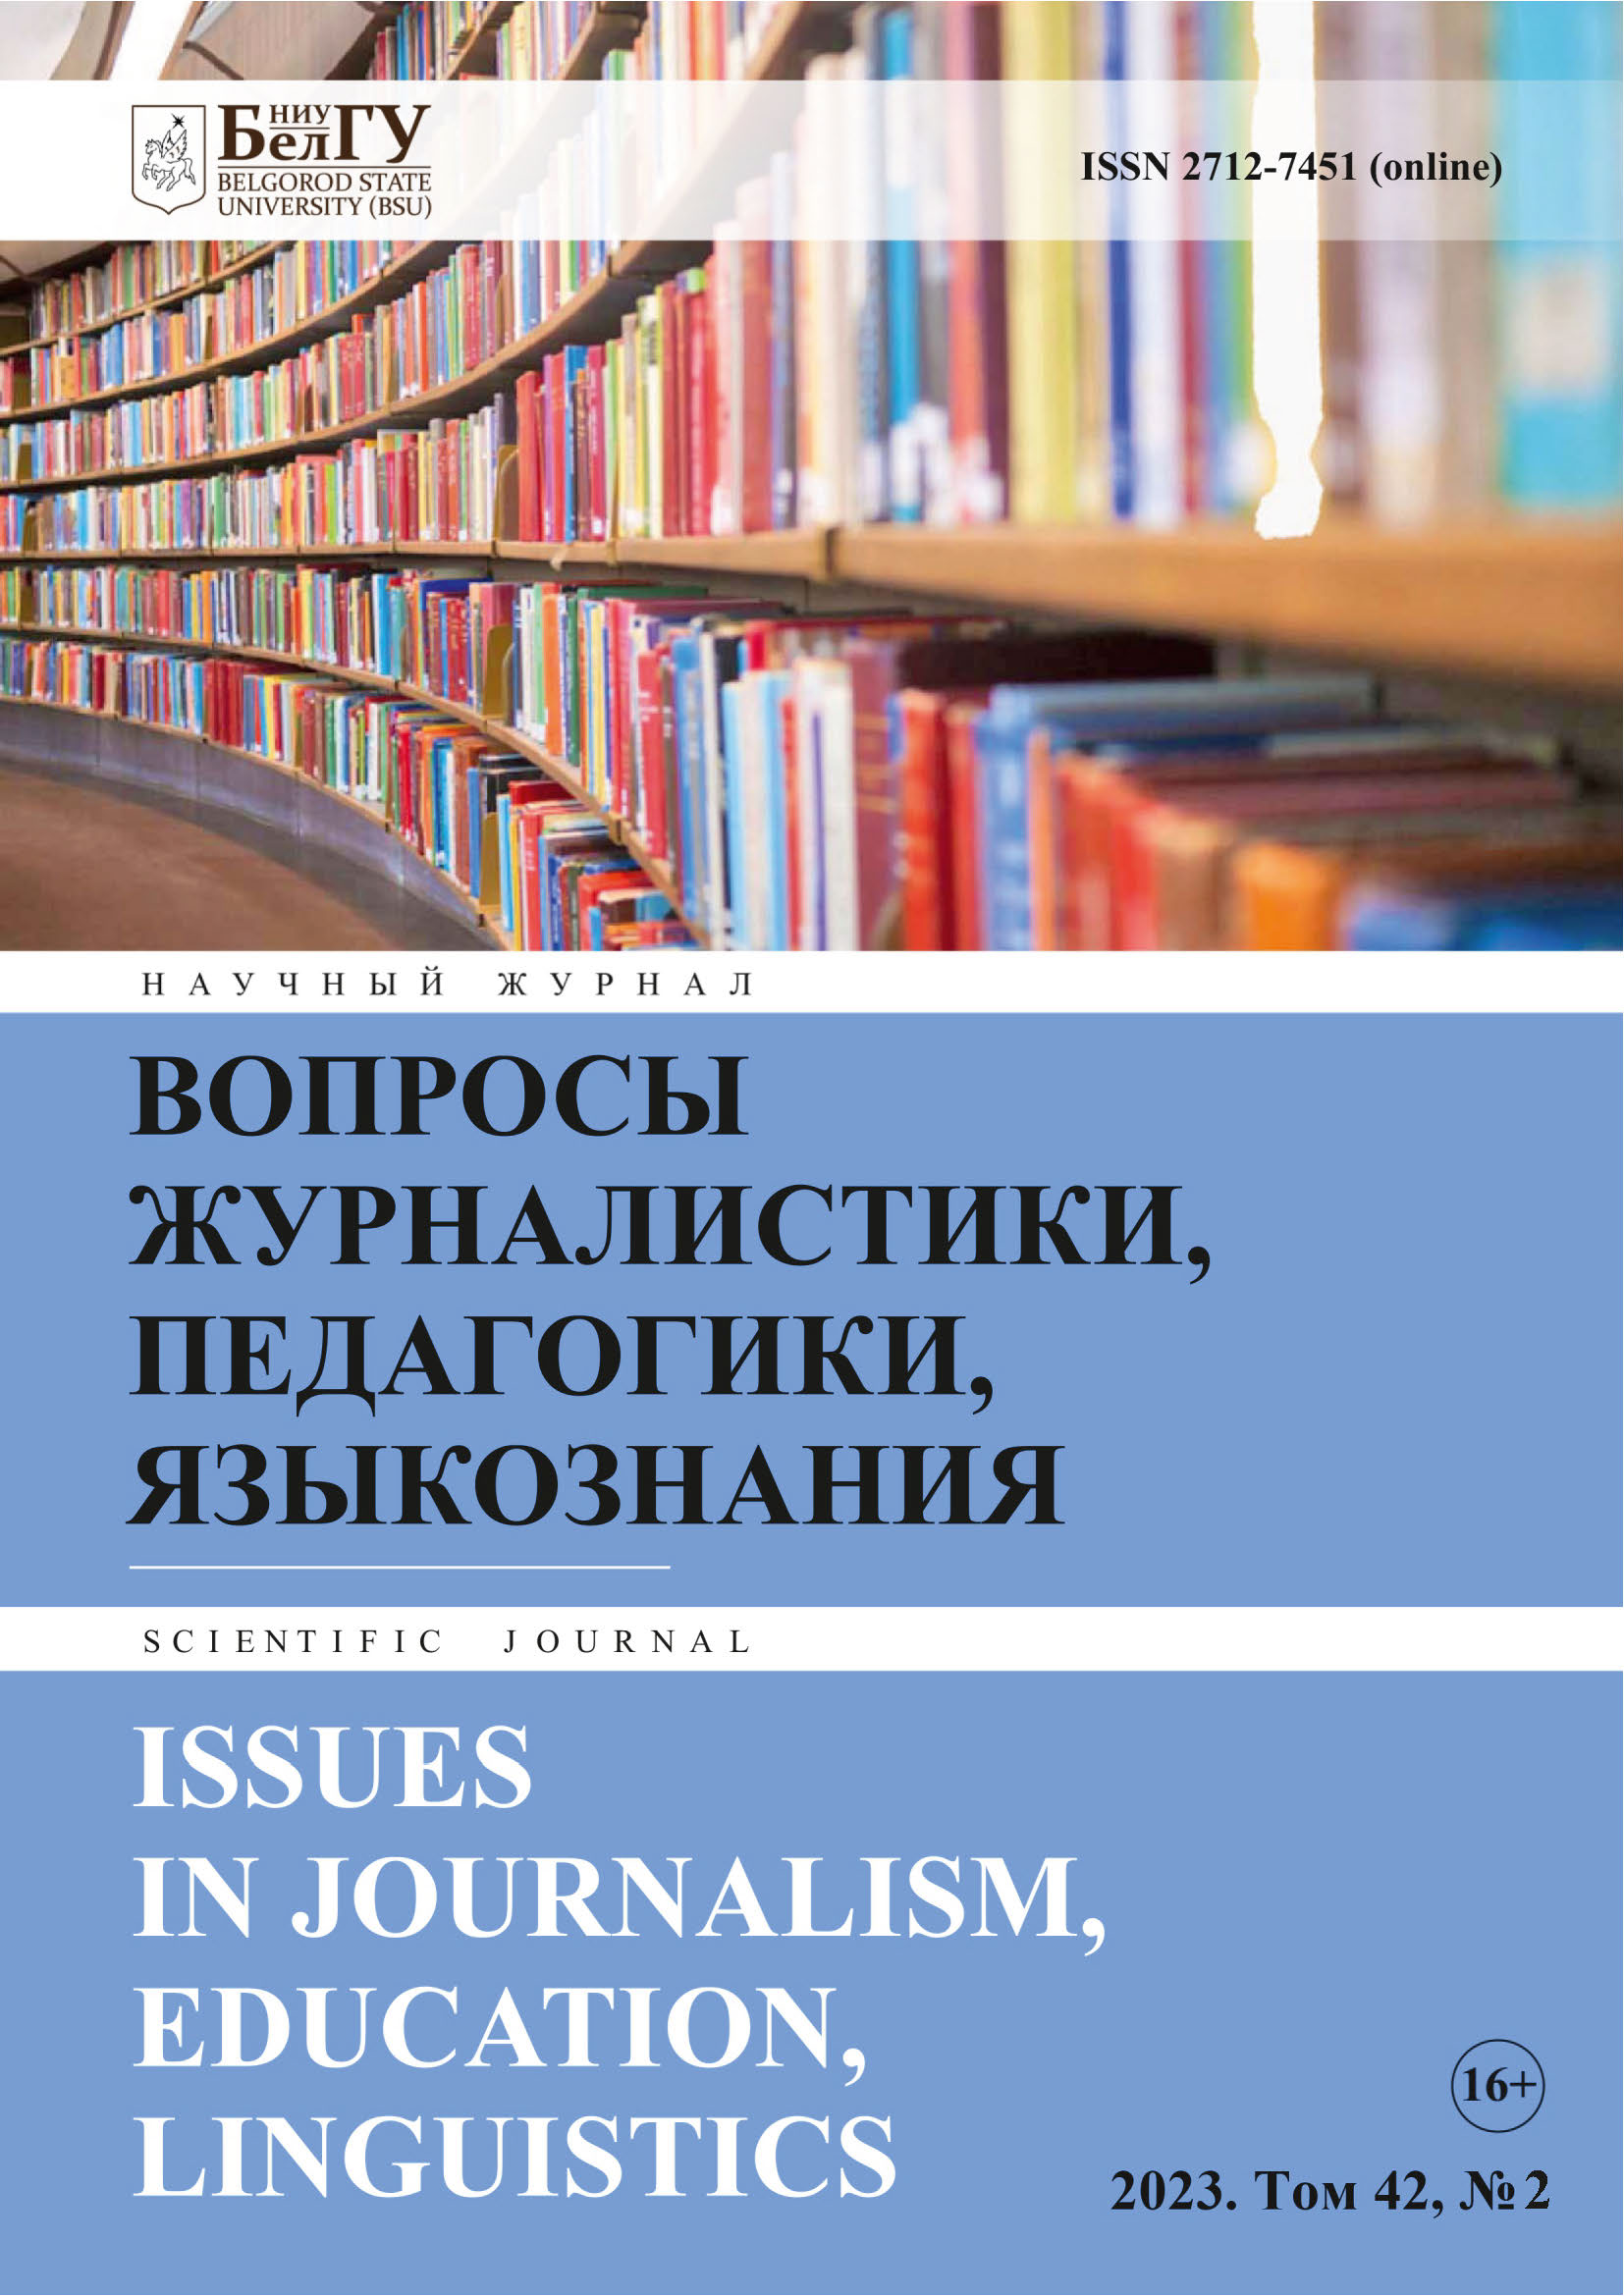 Обложка журнала "Вопросы журналистики, педагогики, языкознания"